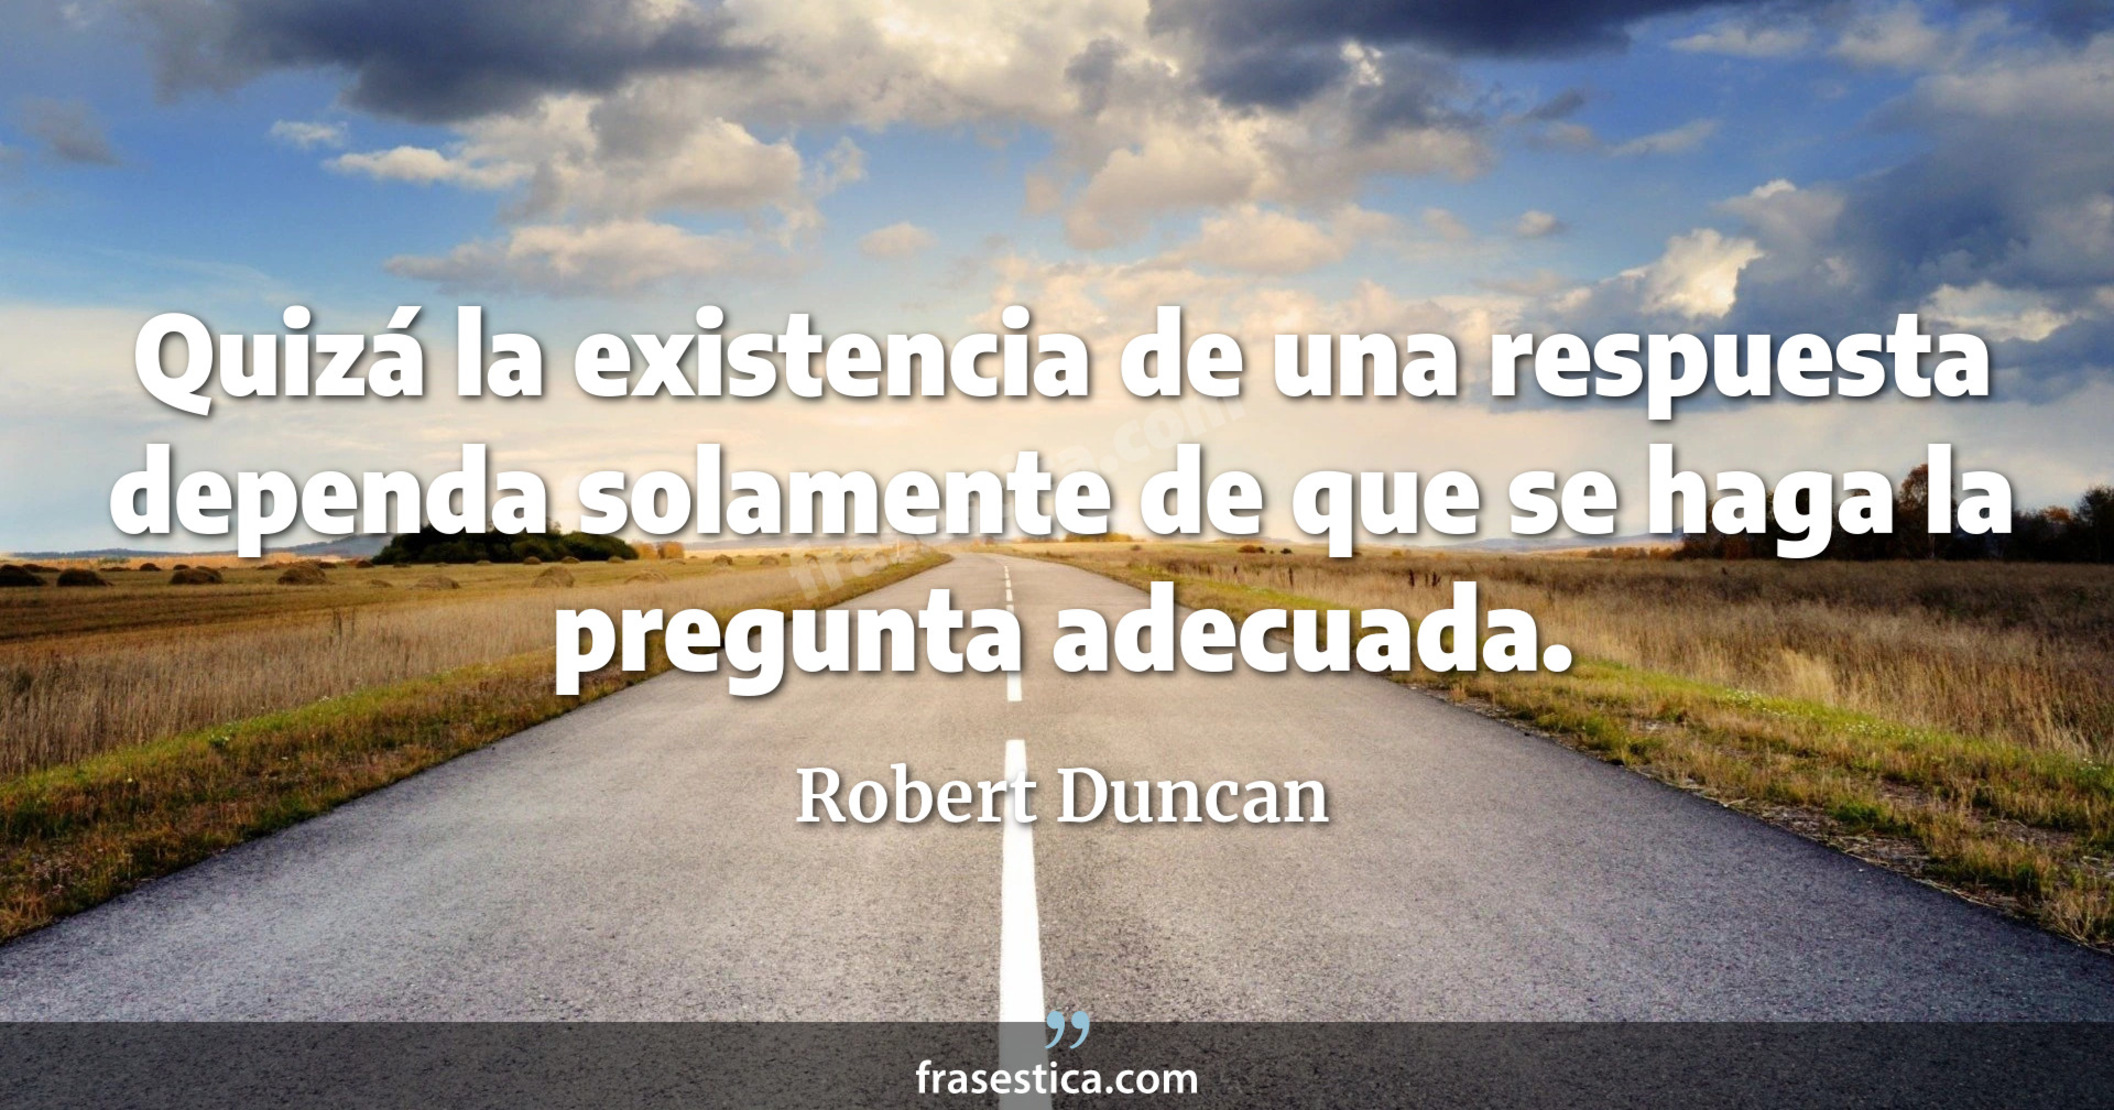 Quizá la existencia de una respuesta dependa solamente de que se haga la pregunta adecuada. - Robert Duncan